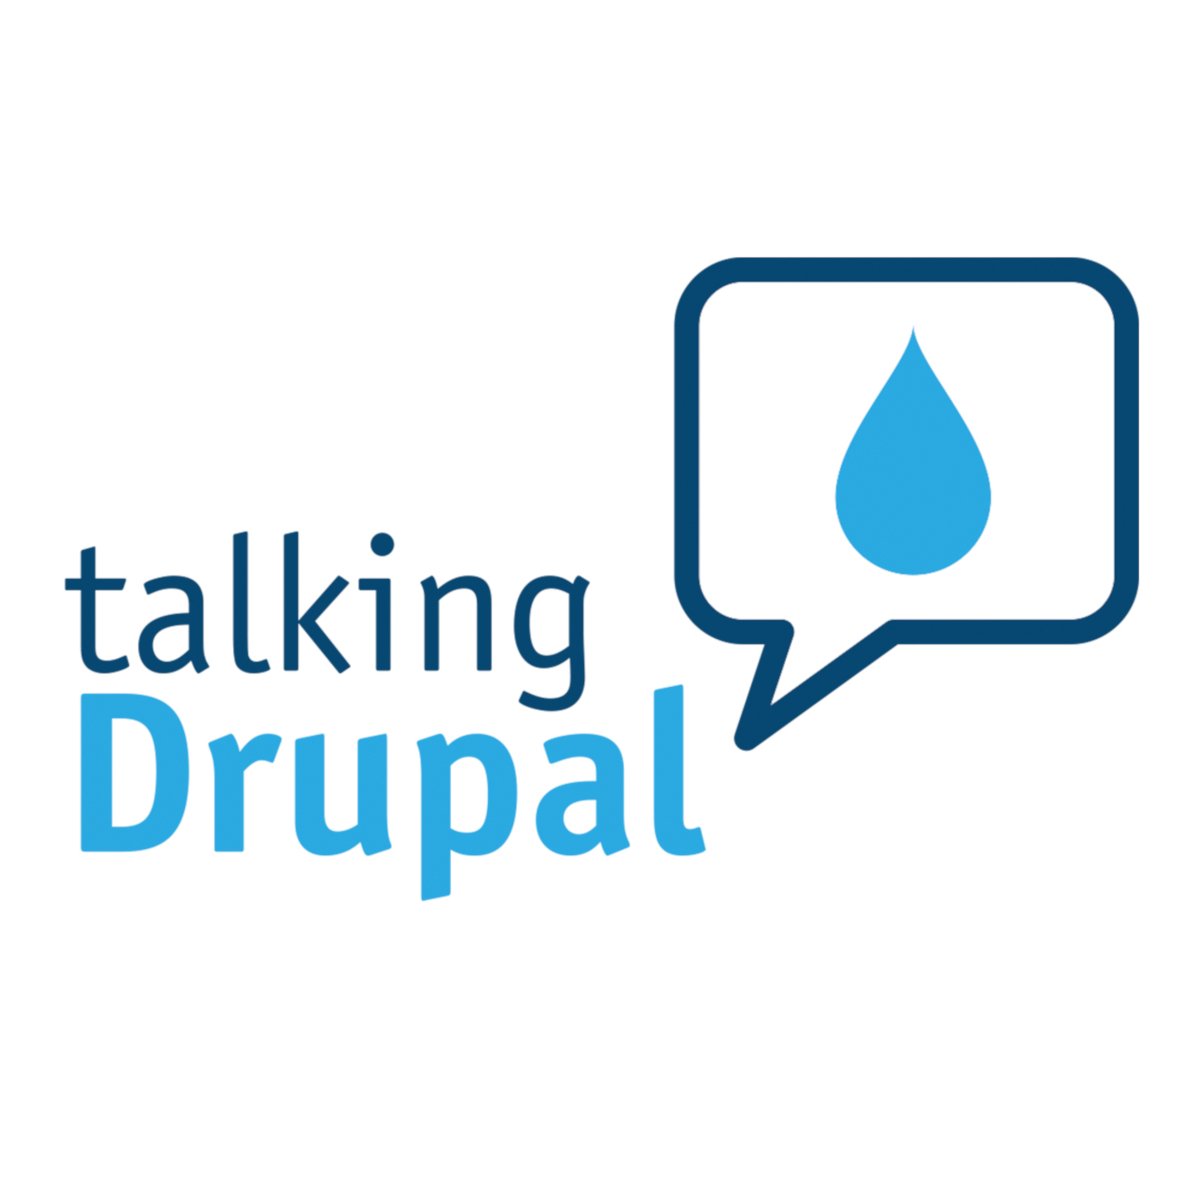 talking-drupal-icon